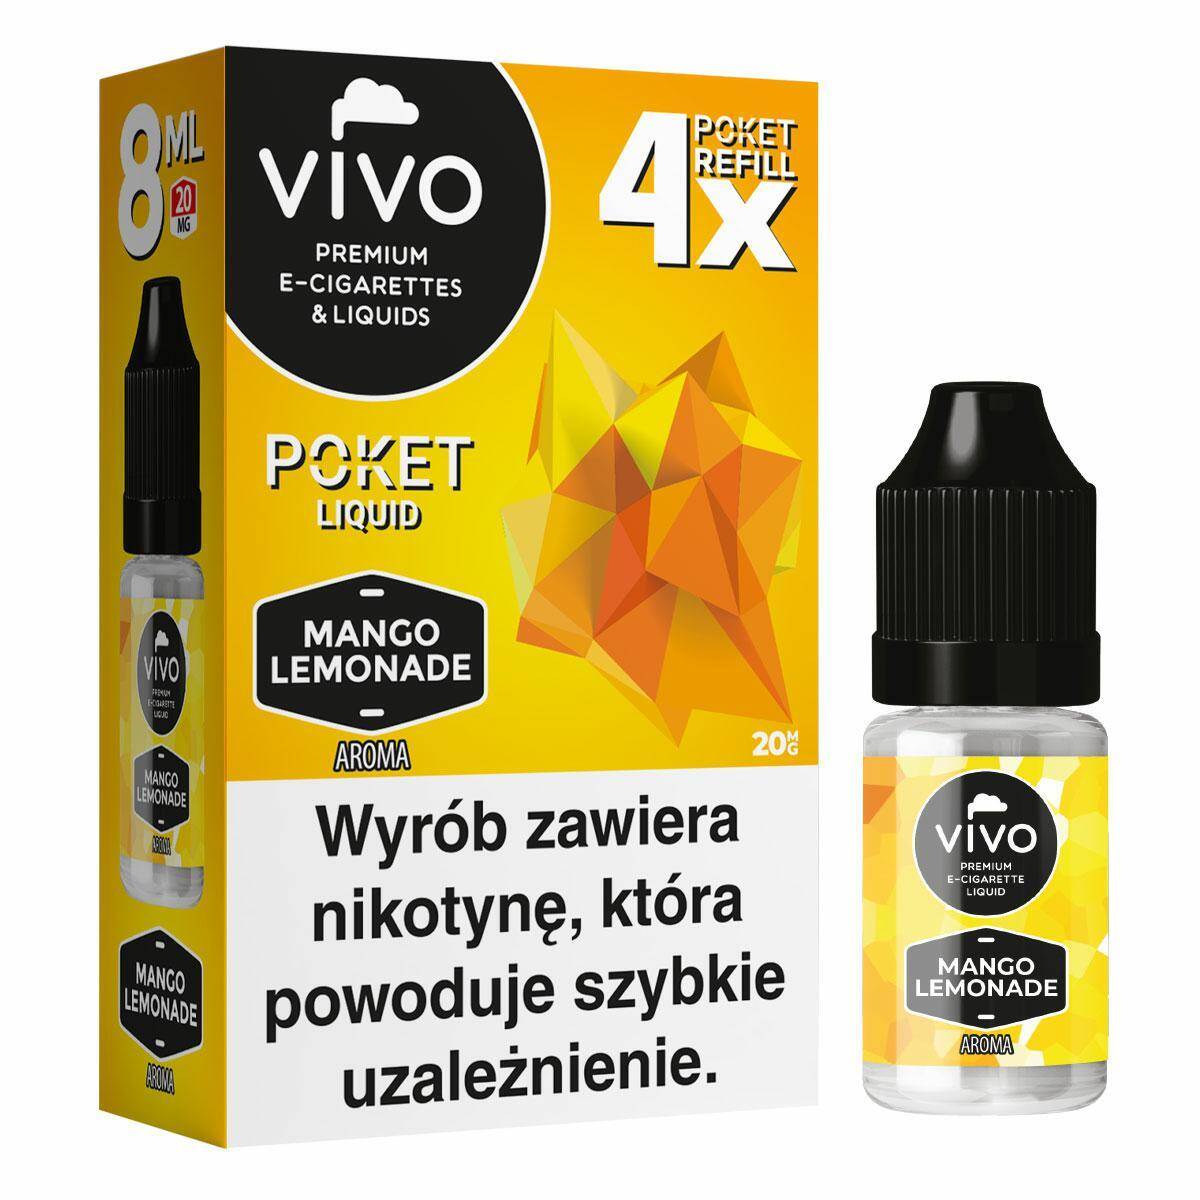 E-liquids VIVO POKET- Mango Lemonade x4/20mg/8ml